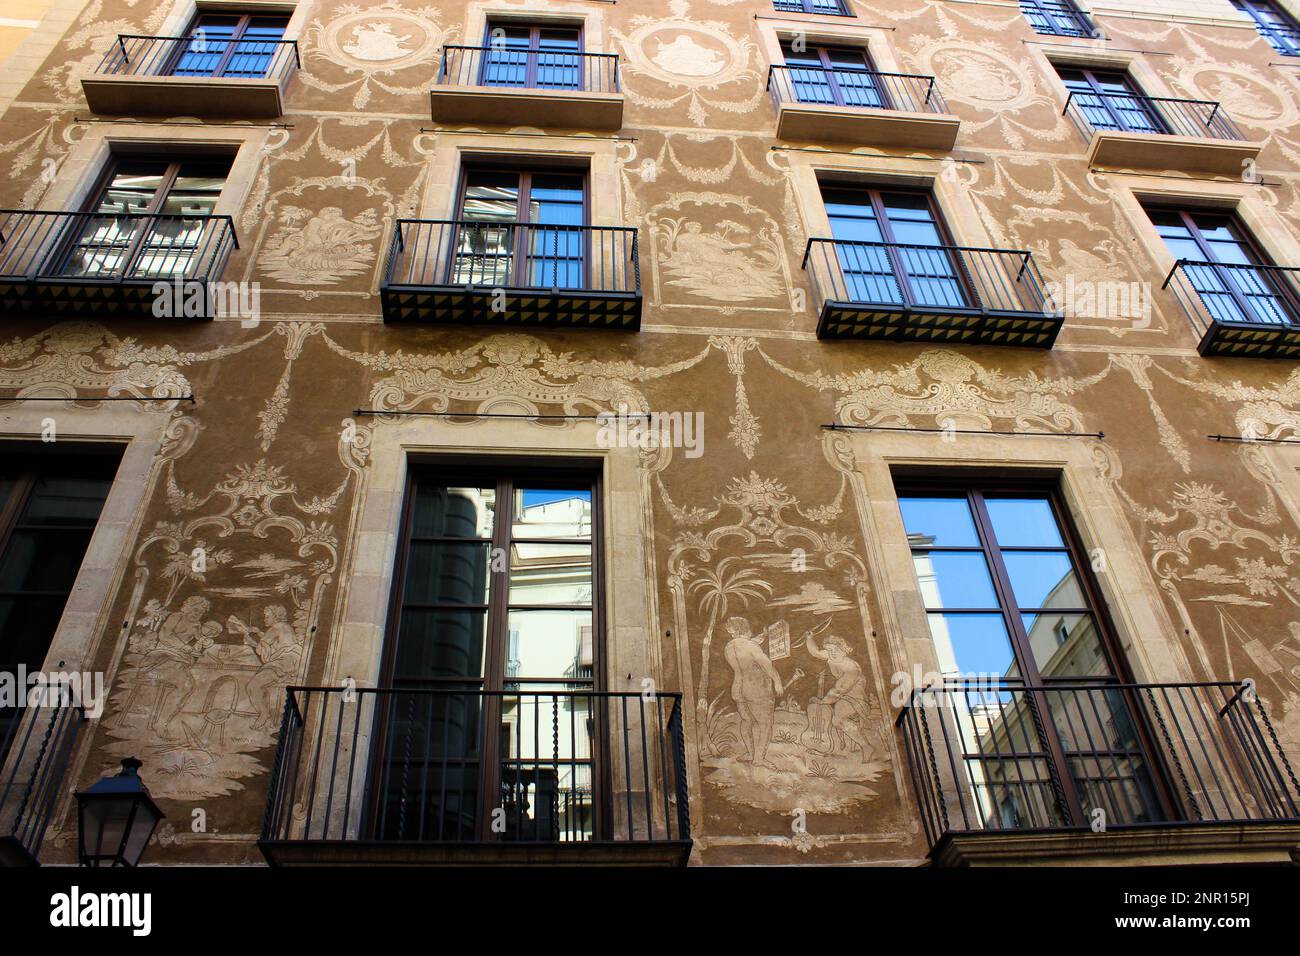 Ein altes Gebäude mit großen Fensterreihen und braunen Wänden, die mit Zeichnungen mittelalterlicher Alltagsszenen und Requisiten geschmückt sind. Stockfoto